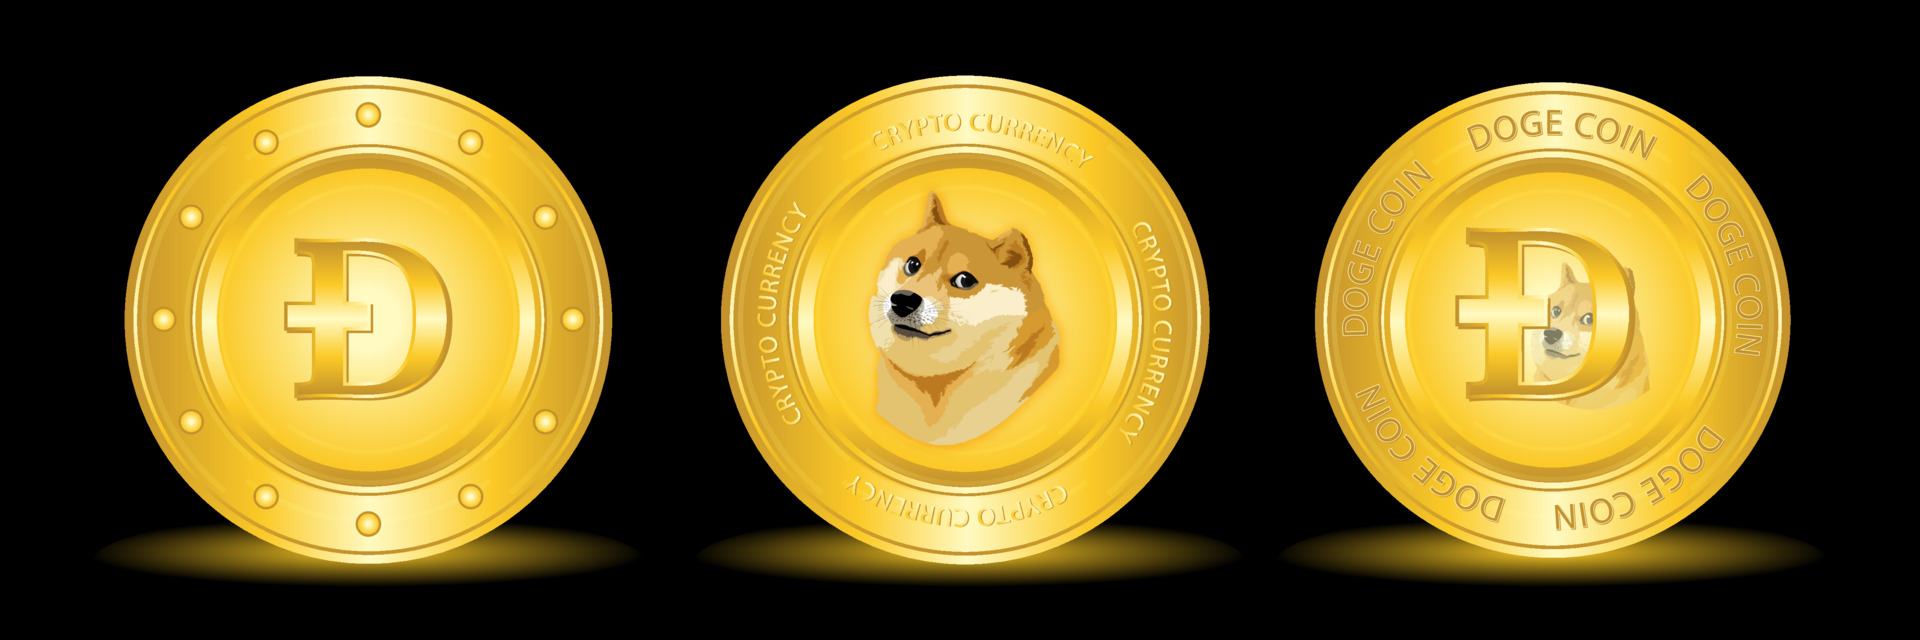 Meme Coins: Kryptowährungen mit Kultstatus - Titelbild